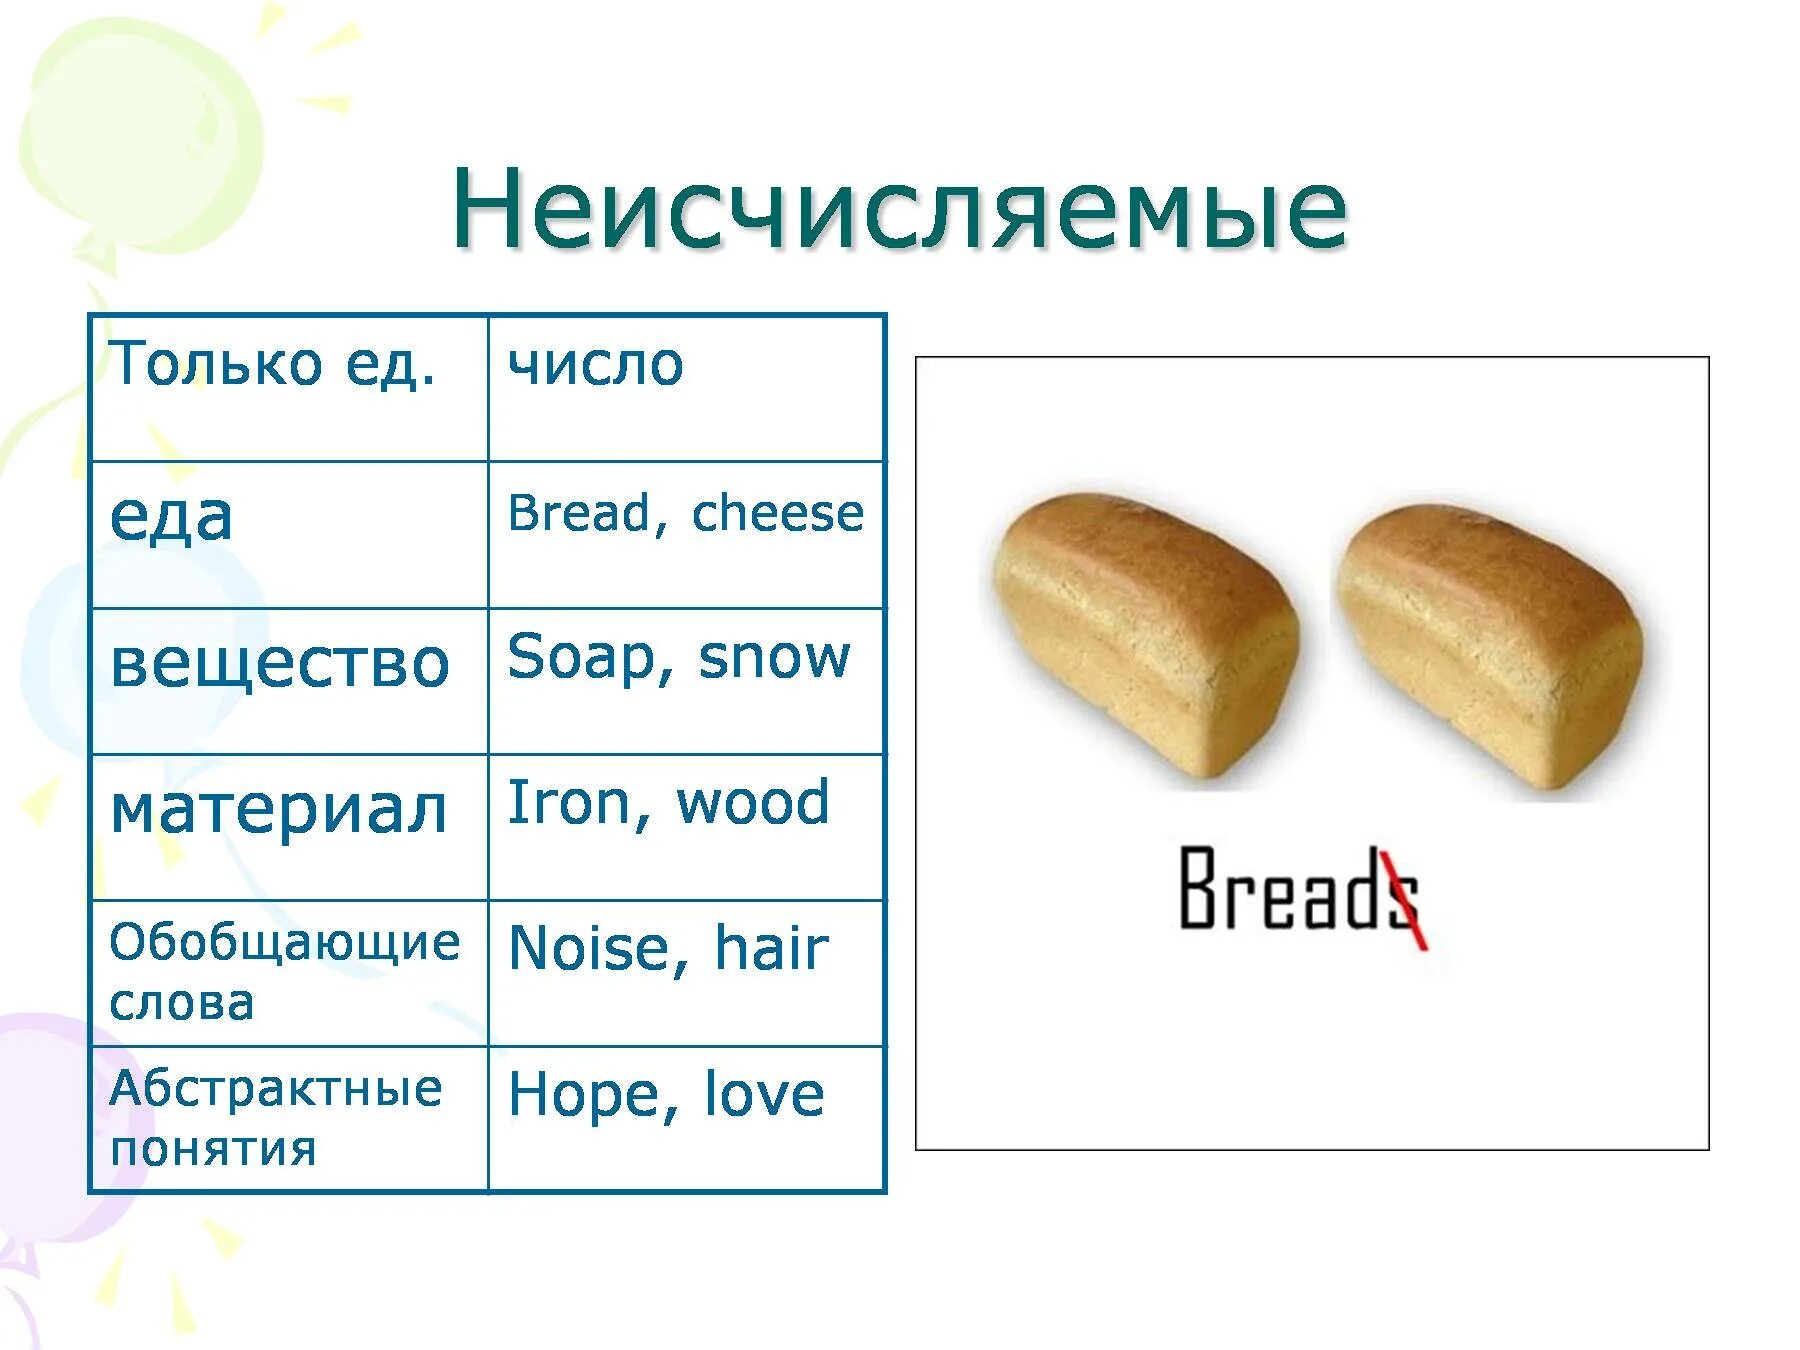 Bread исчисляемое или неисчисляемое в английском языке. Хлеб это исчисляемое или неисчисляемое в английском языке. Исчисляемые и неисчисляемые в английском Bread. Хлеб в английском исчисляемое или нет. Множественное слова сахар